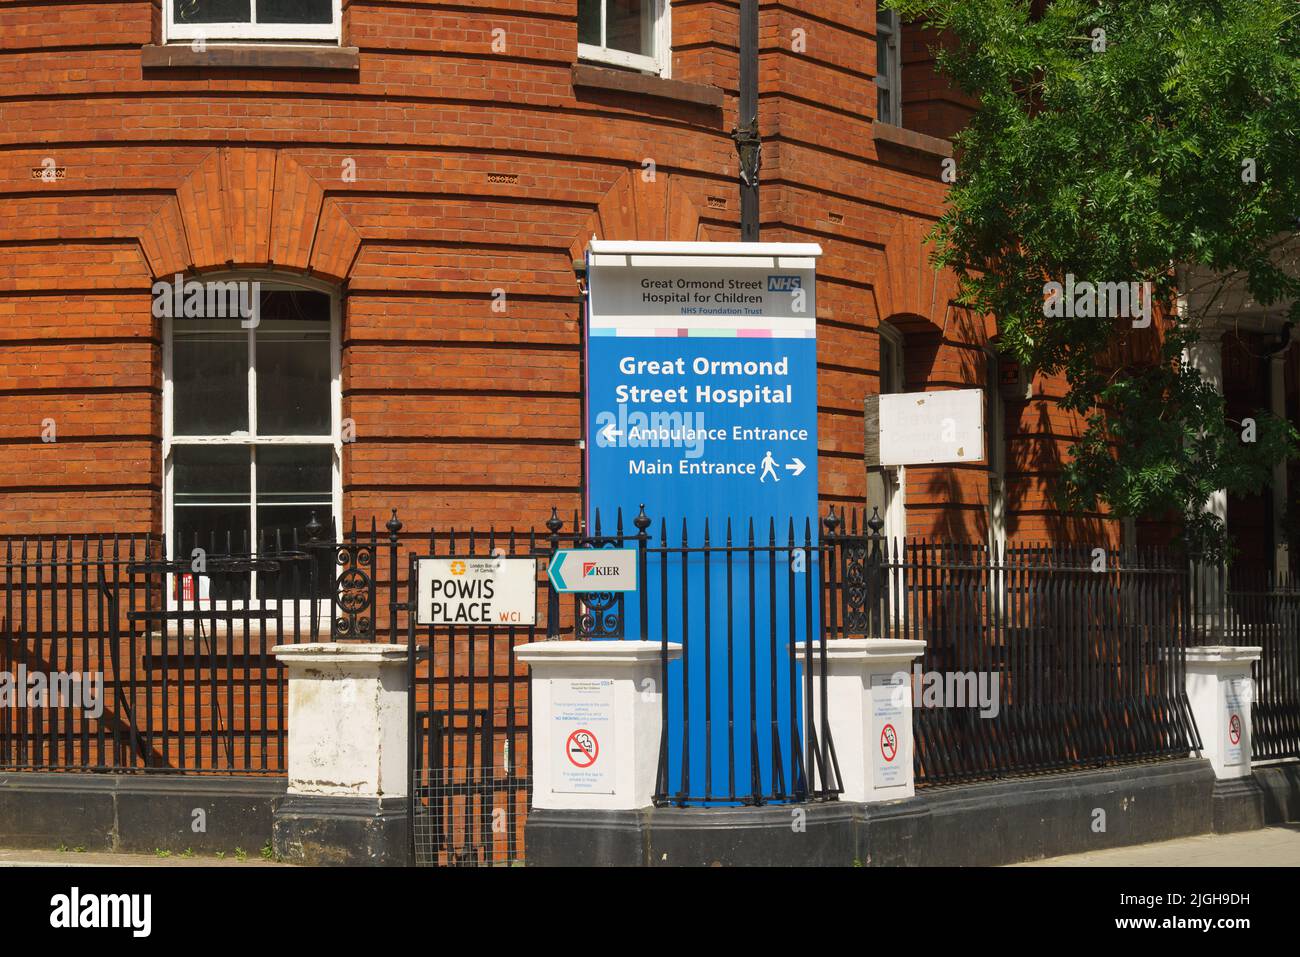 Signage on Powis Place, indicating Great Ormond Street Hospital, London, UK Stock Photo